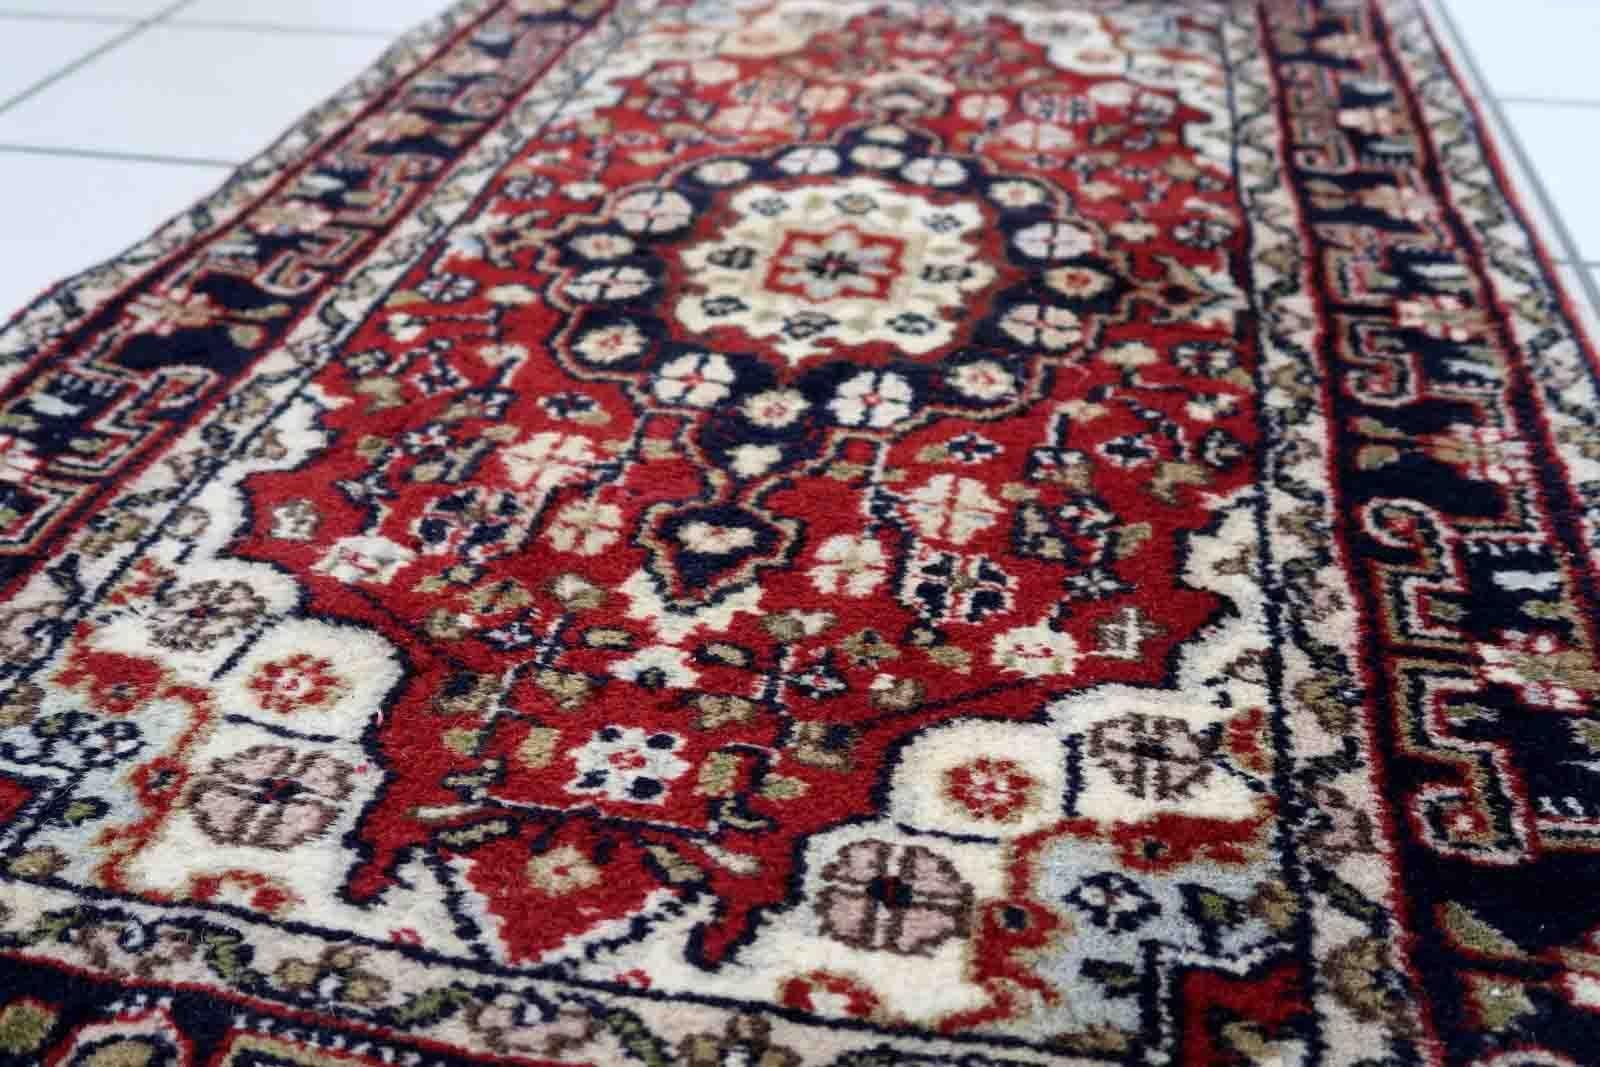 Handgefertigter Vintage-Teppich aus dem Nahen Osten mit traditionellem Medaillonmuster. Der Teppich wurde Ende des 20. Jahrhunderts aus Wolle hergestellt. Es ist in gutem Originalzustand

-zustand: original gut,

-etwa: 1970er Jahre,

-größe: